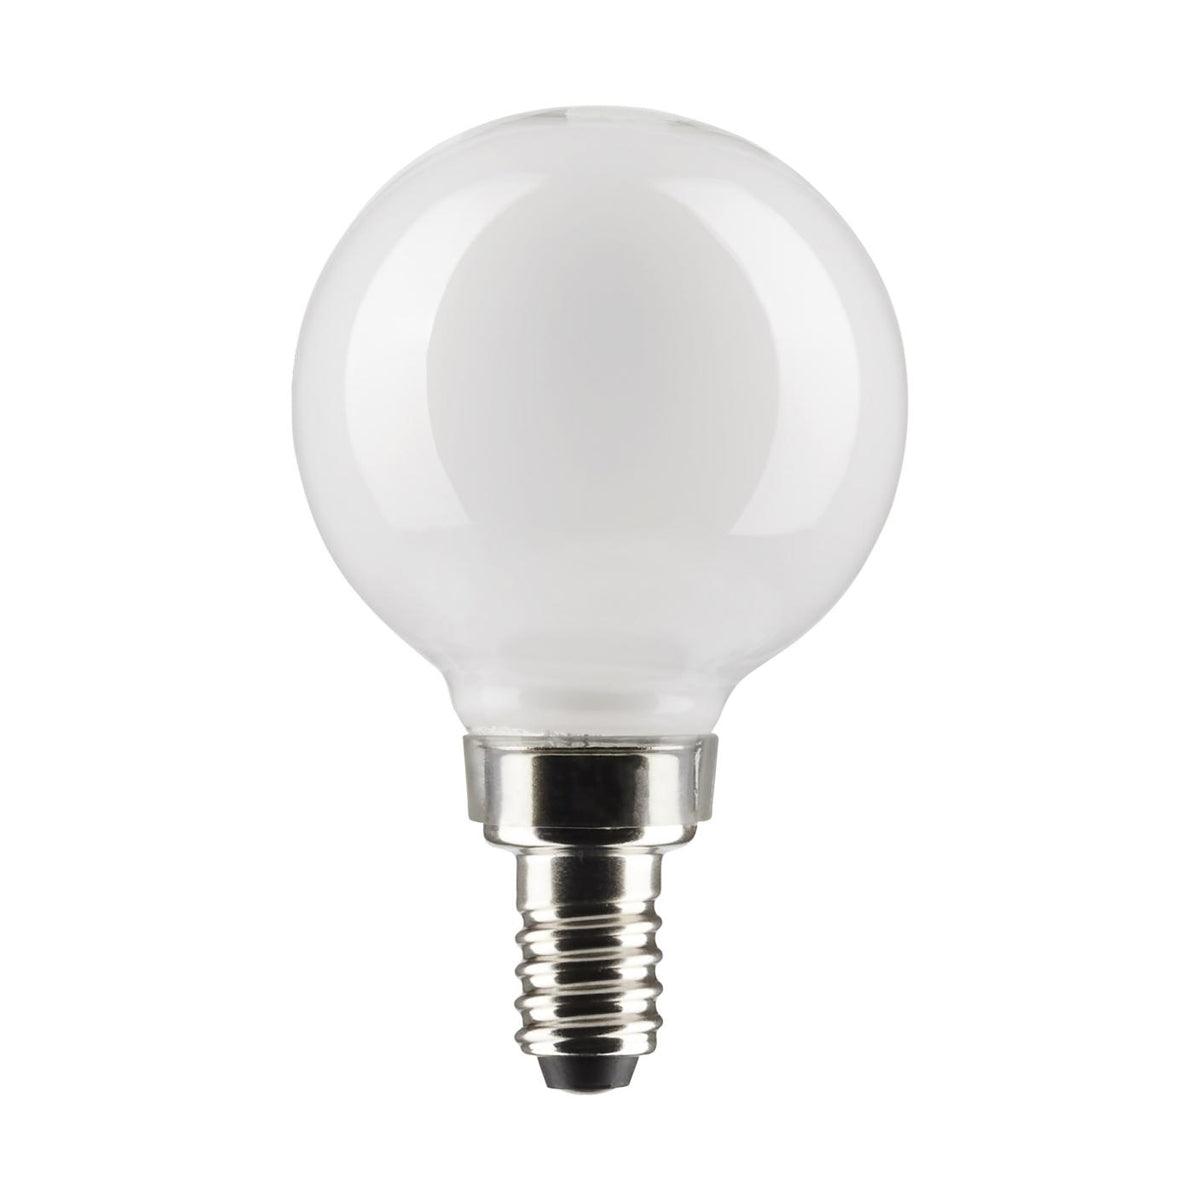 G16.5 LED Globe Bulb, 6 Watt, 500 Lumens, 2700K, E12 Candelabra Base, Frosted Finish, Pack Of 2 - Bees Lighting